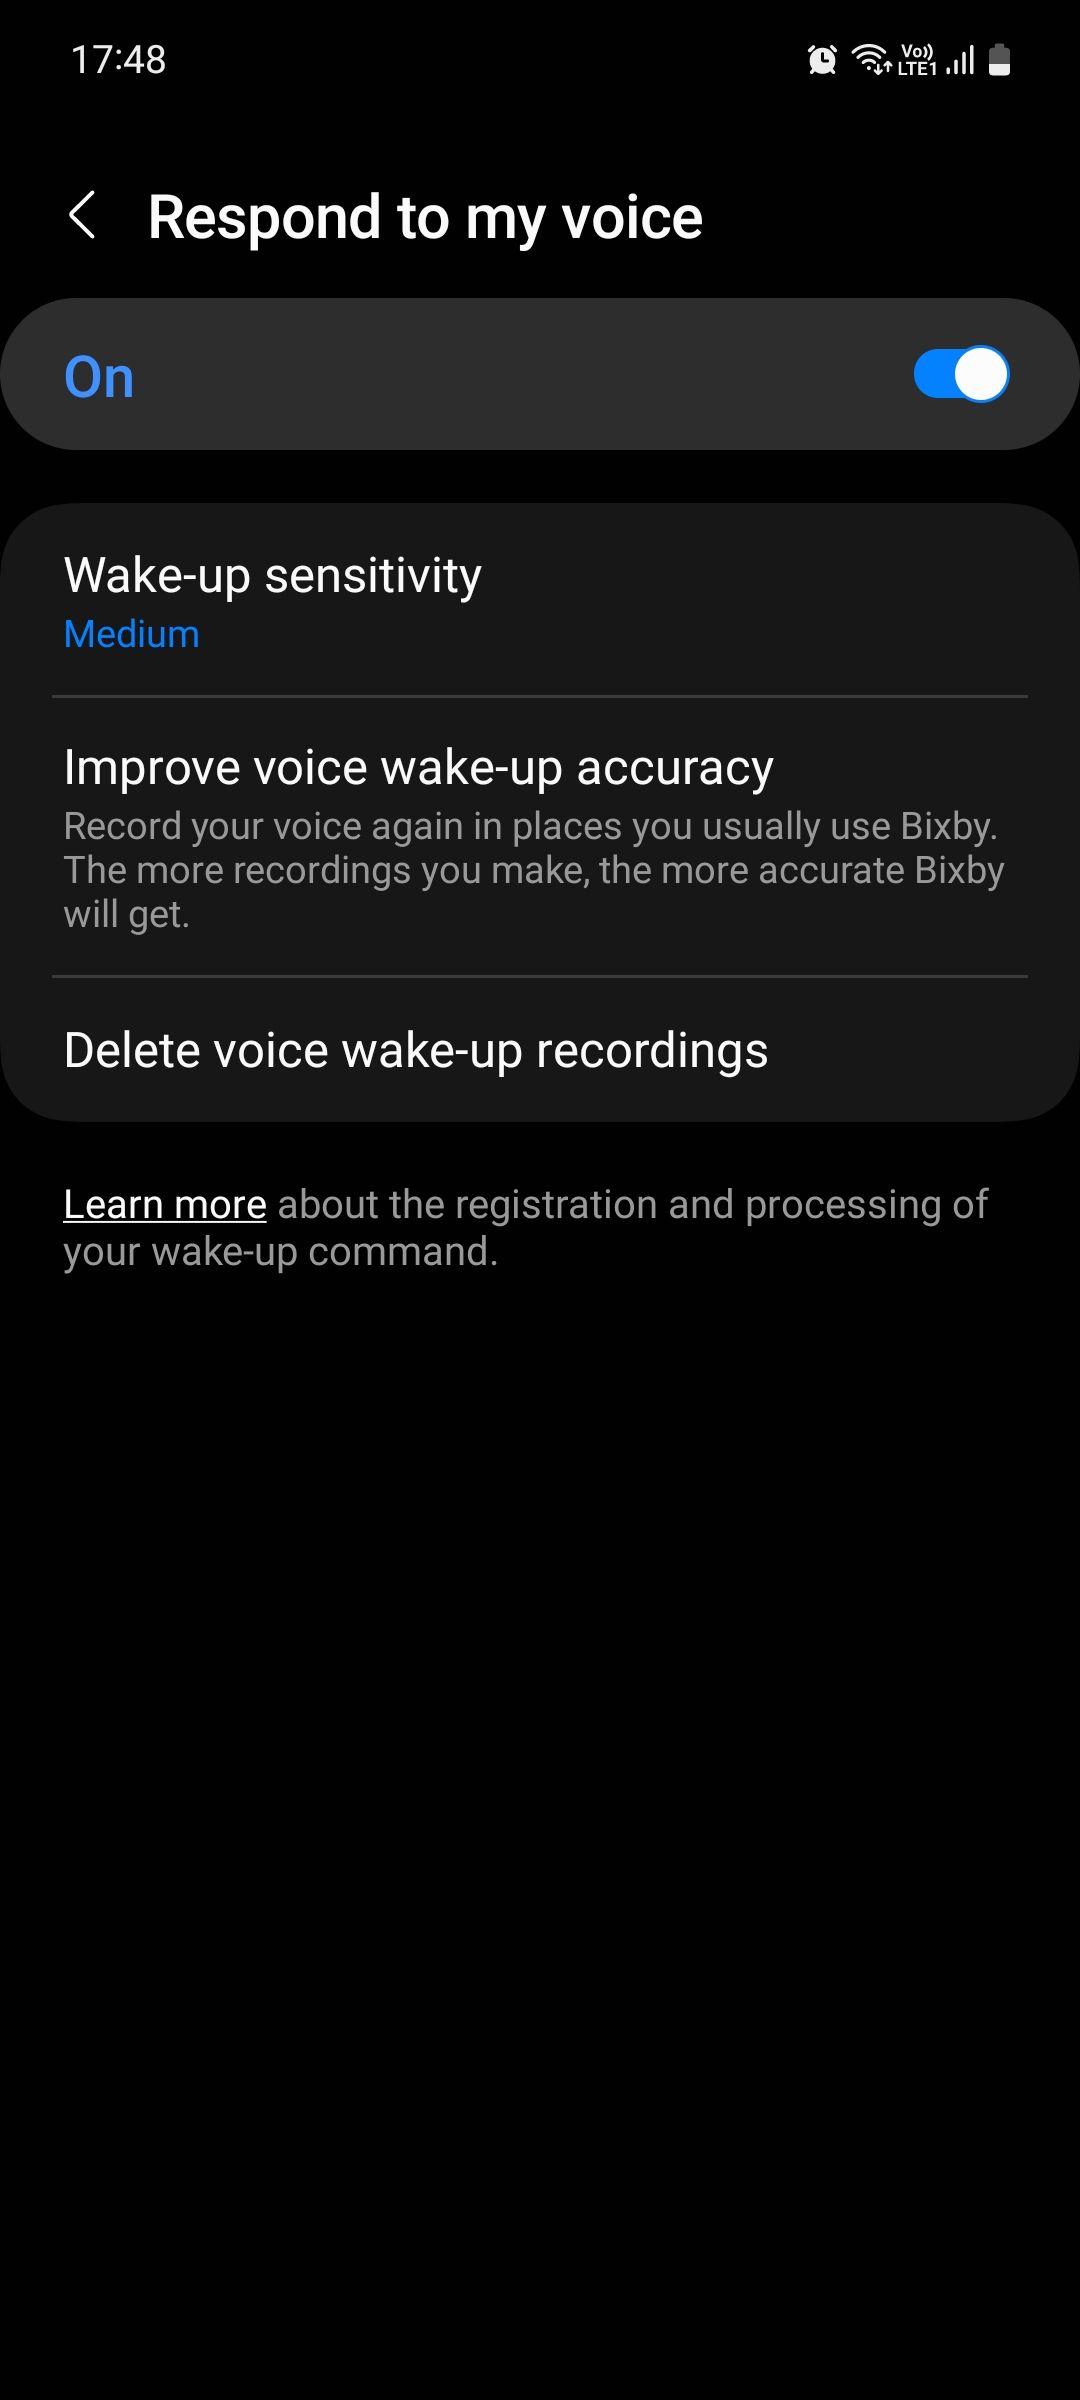 Bixby Respond to my voice menu